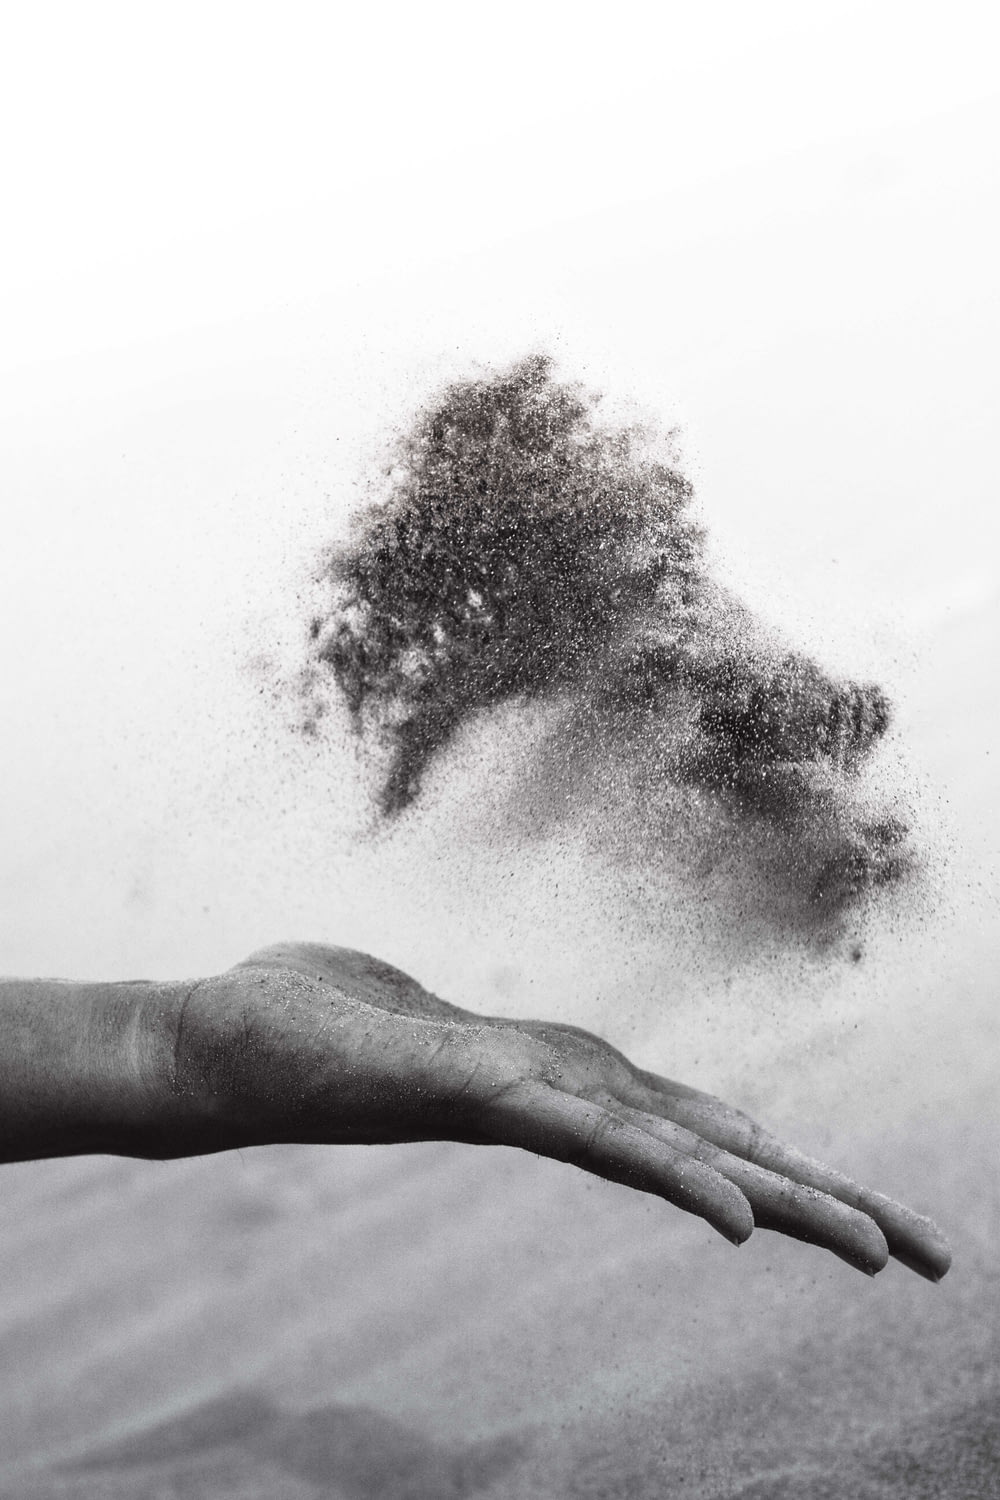 Photographie en niveaux de gris de la main d’une personne étalant du sable